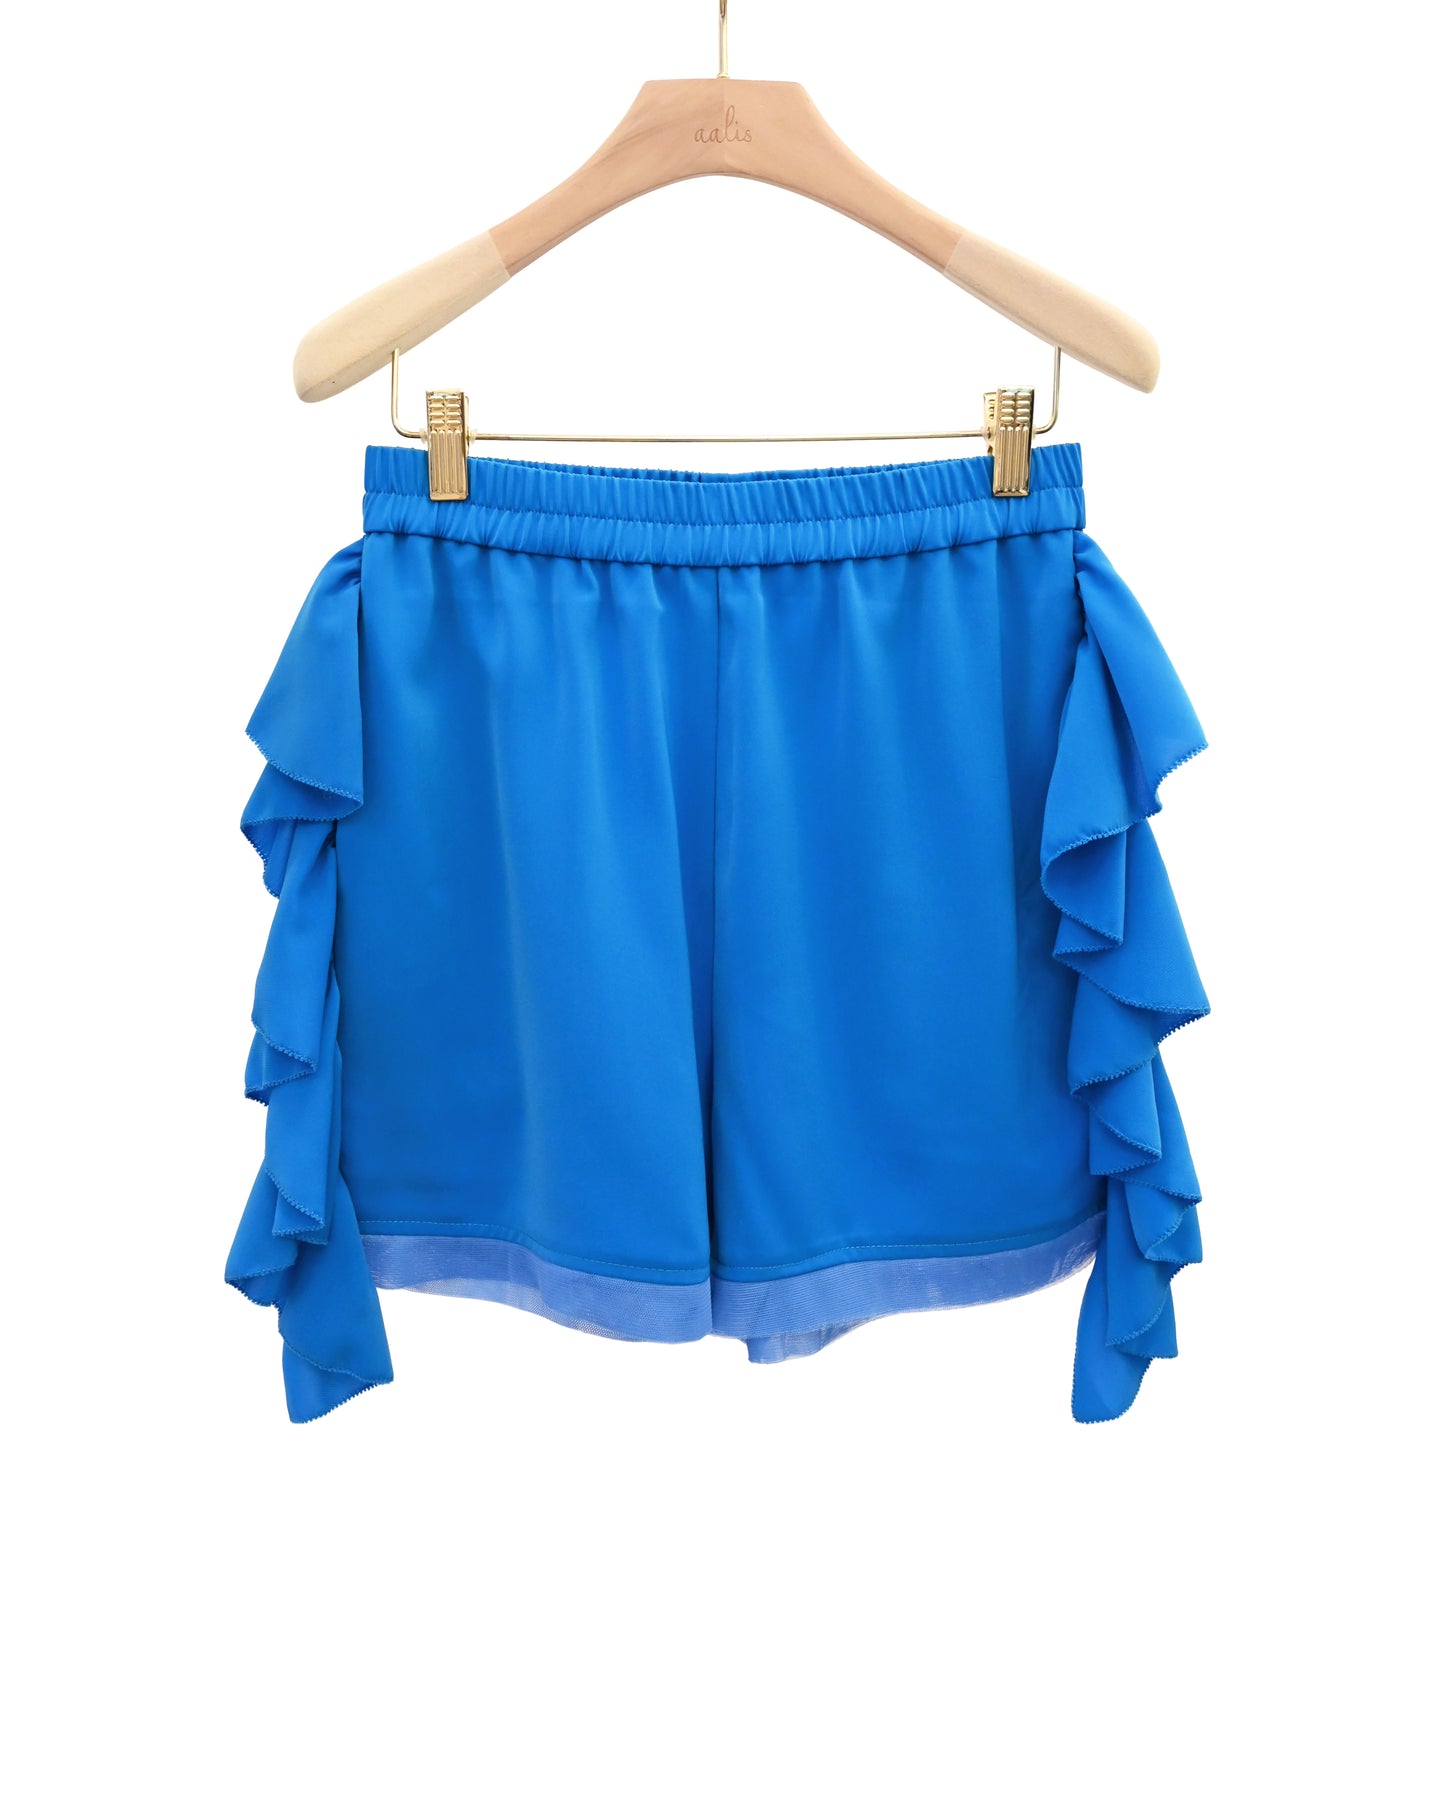 aalis SAIKI shorts (Blue)